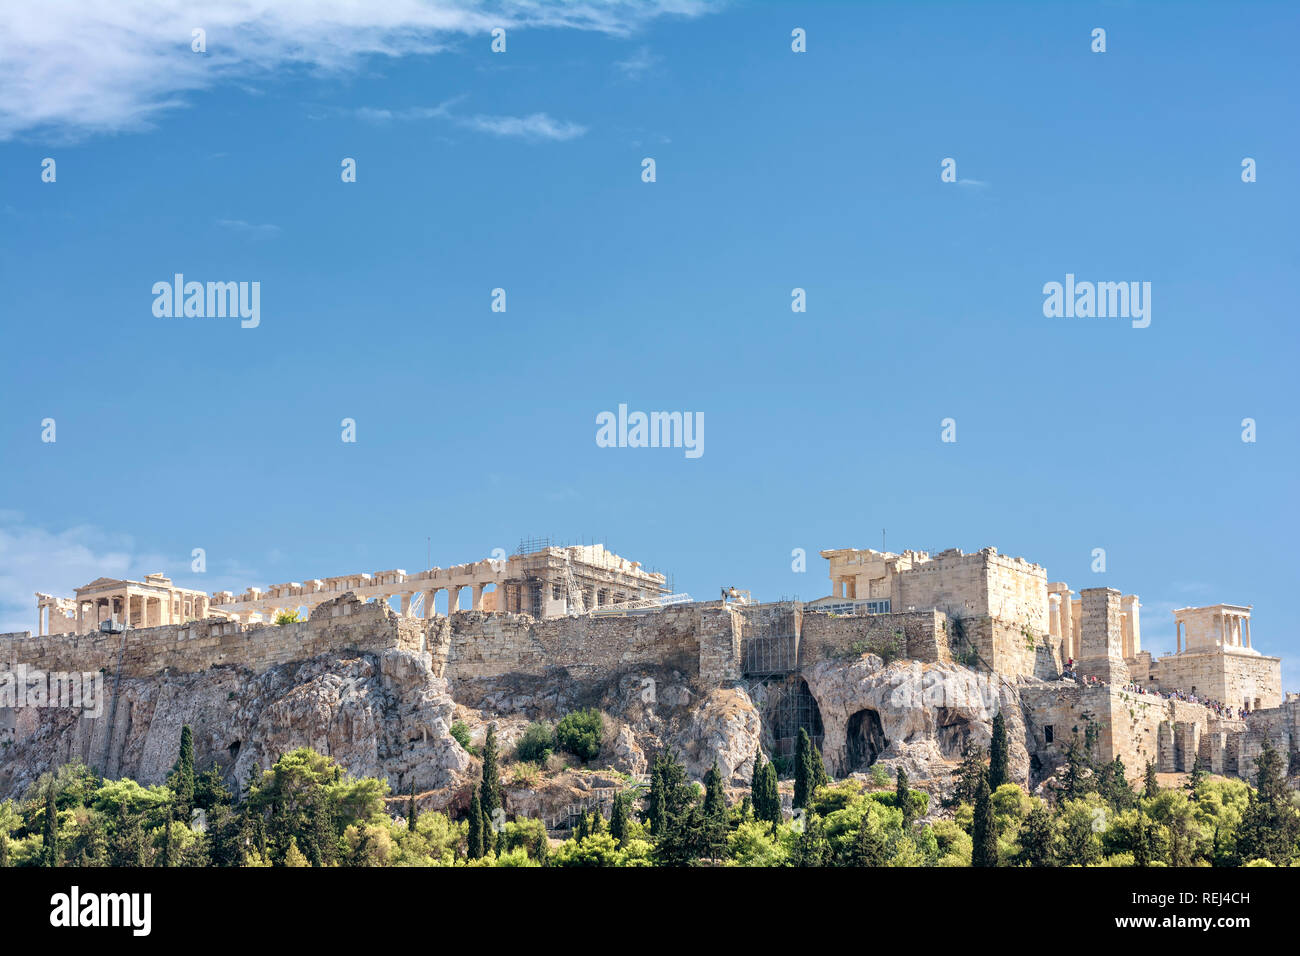 Acropolis Of Athens, Greece Stock Photo